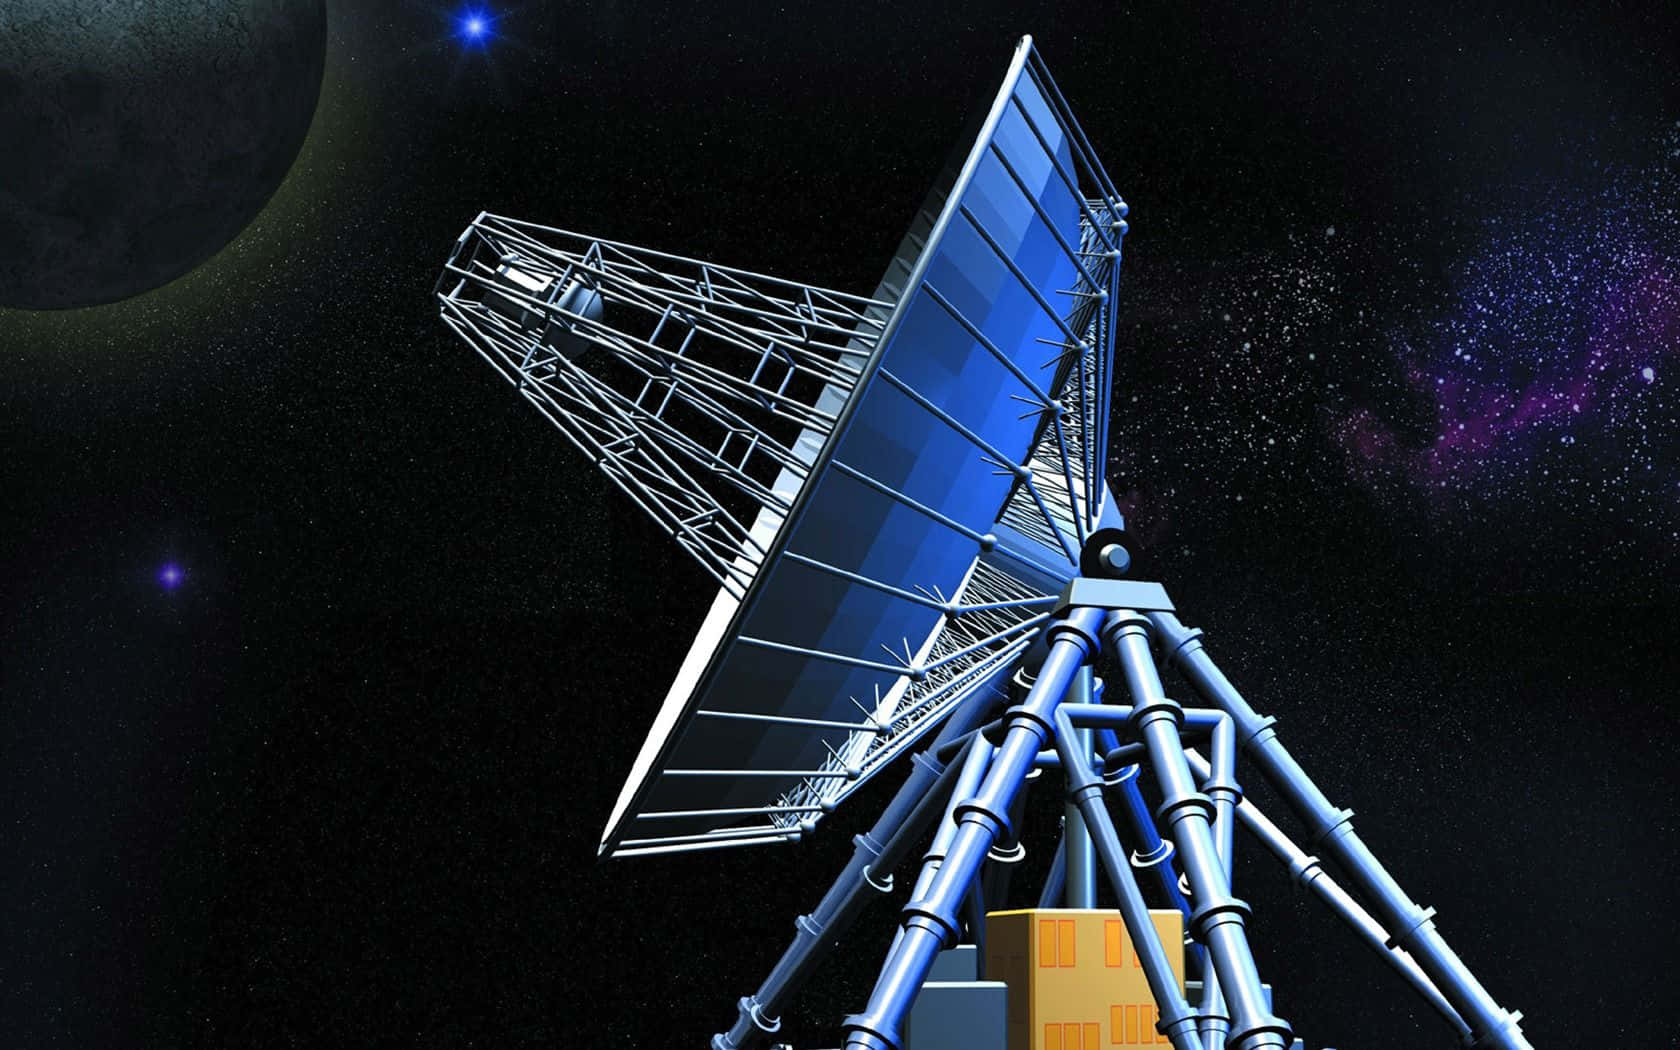 Ensatellit Visas I Bakgrunden Av En Mörk Natt Himmel På Dator- Eller Mobilskärmen.